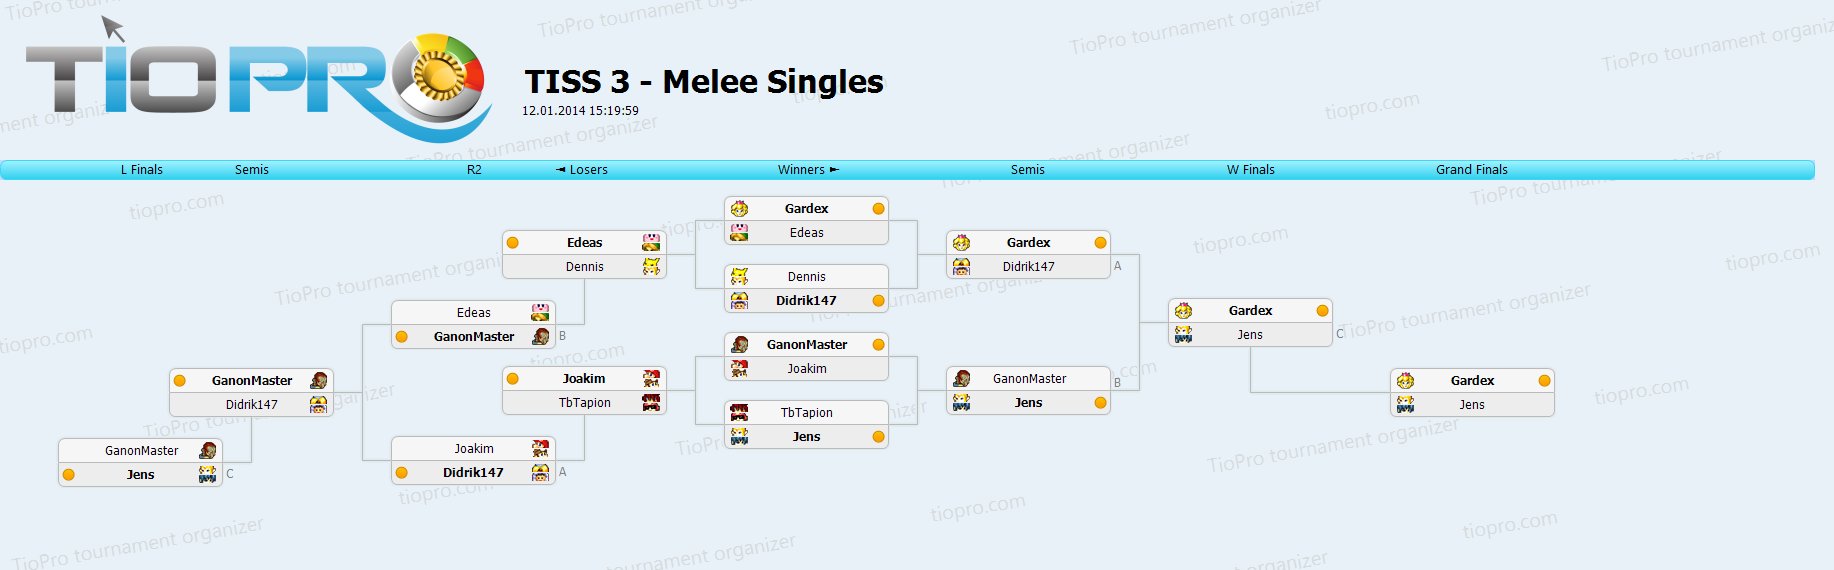 TISS 3 - Melee Singles